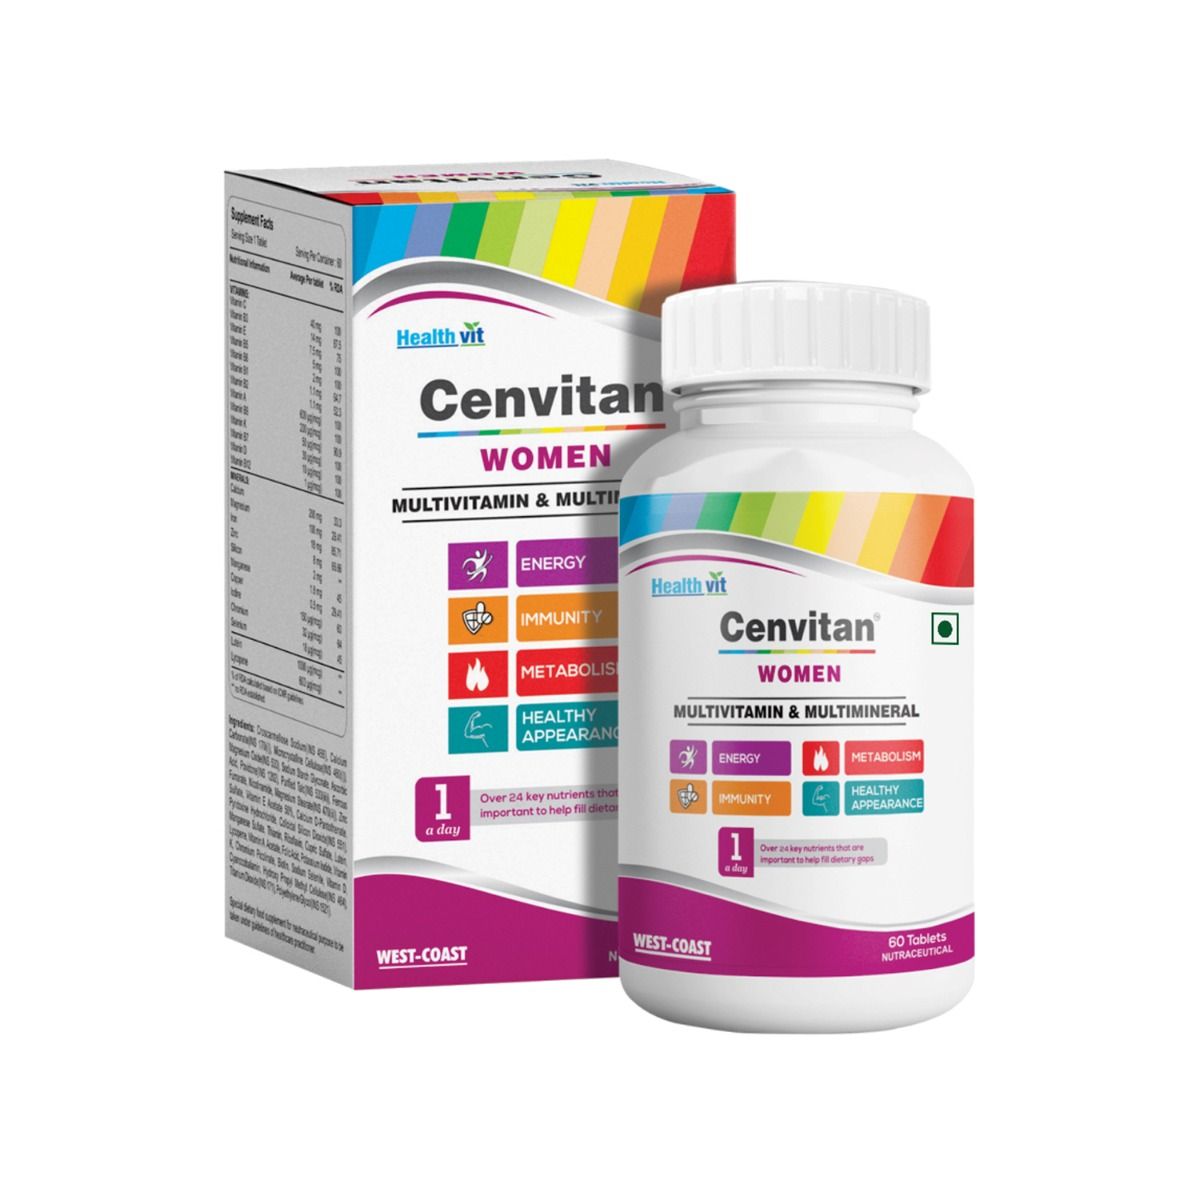 Buy Healthvit Cenvitan Women Multivitamin & Multimineral, 60 Tablets Online